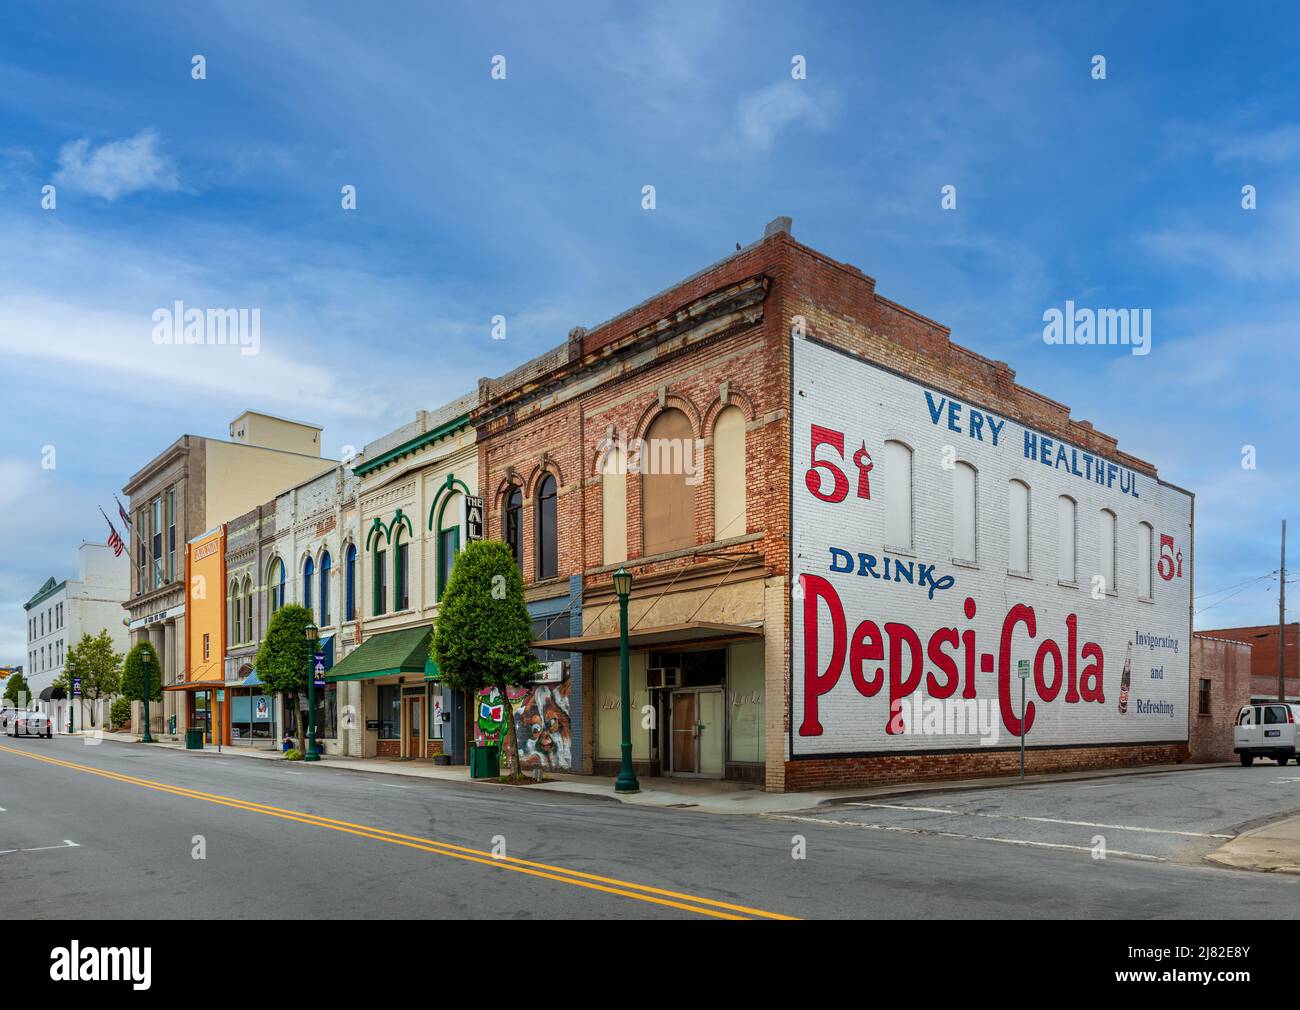 THOMASVILLE, NC, EE.UU.-8 DE MAYO de 2022: Un bloque de edificios comerciales antiguos en el centro de la ciudad, con un gran anuncio pintado Pepsi-Cola en la pared final. Foto de stock